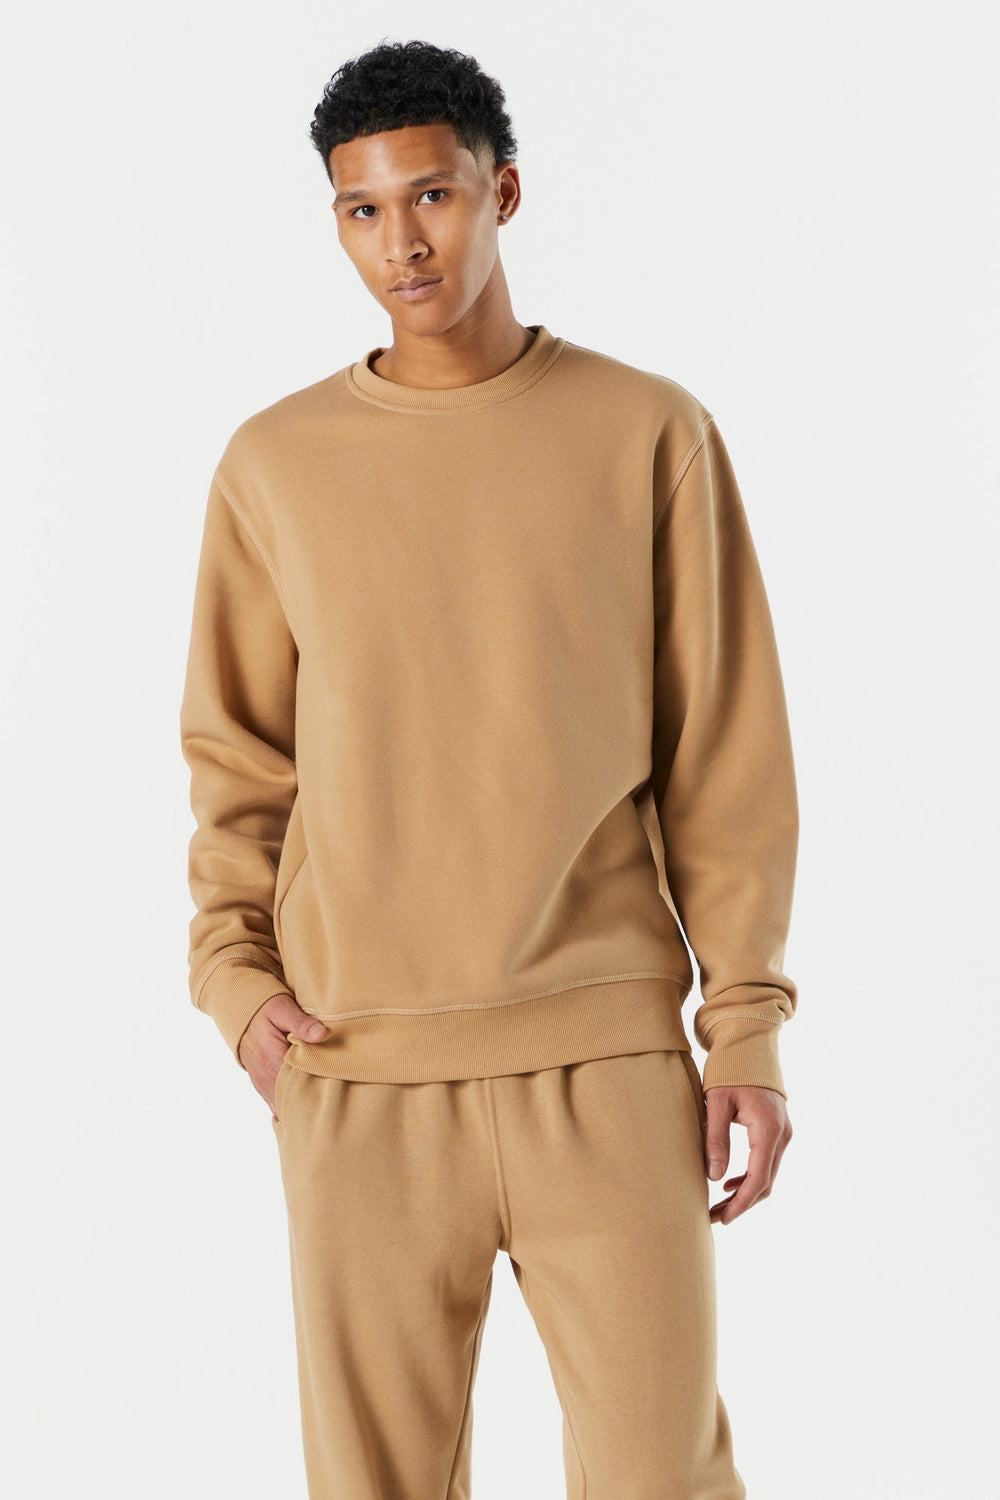 Solid Colored Fleece Sweatshirt Solid Colored Fleece Sweatshirt 7